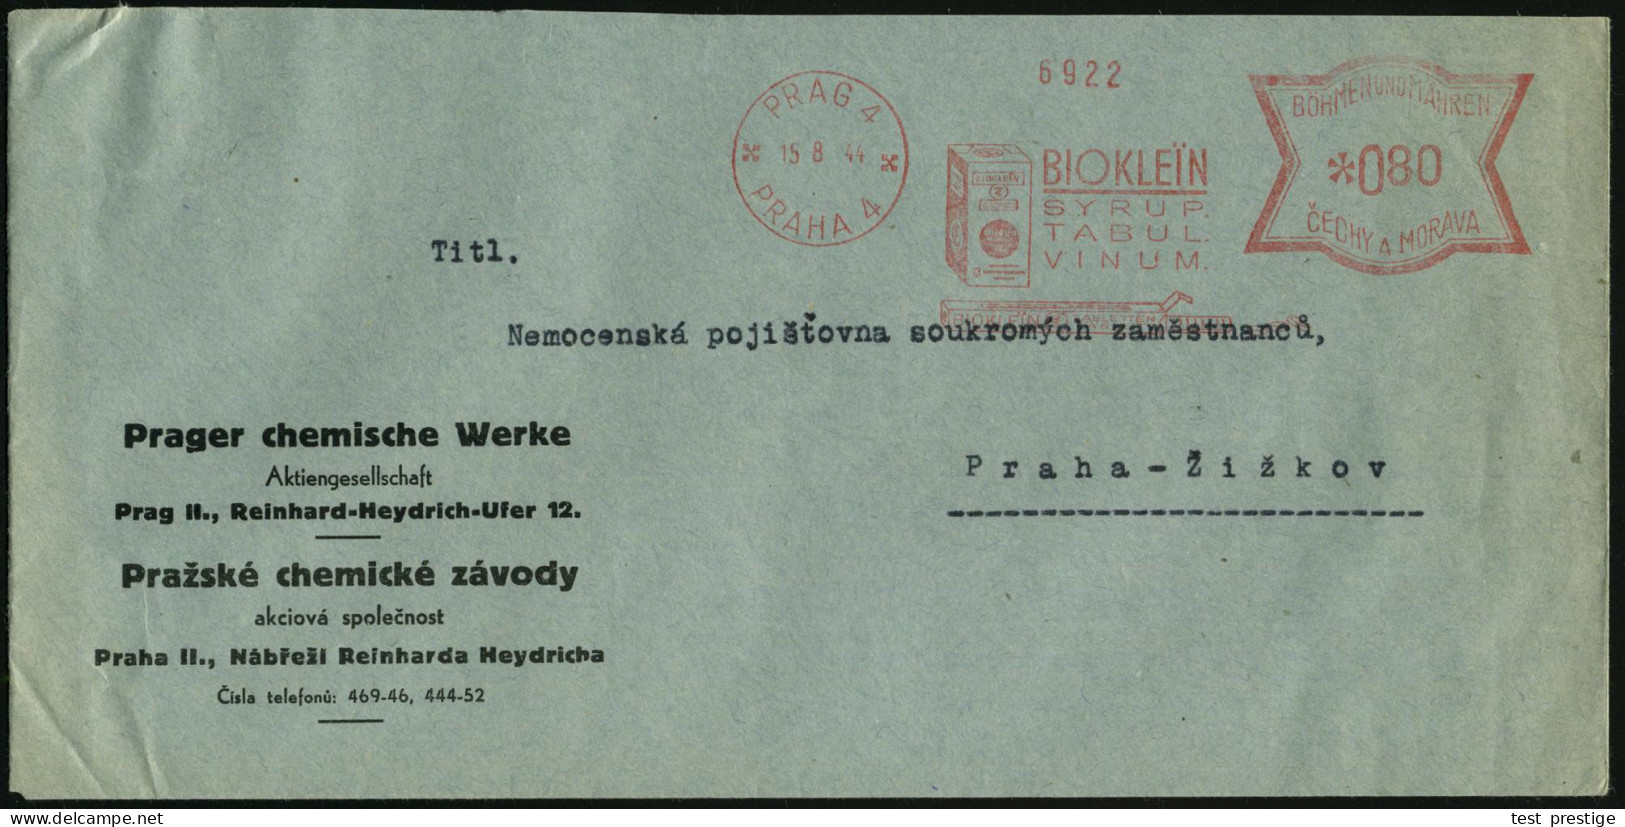 BÖHMEN & MÄHREN 1944 (15.8.) AFS Francotyp: PRAG 4/PRAHA 4/BIOKLEIN/SYRUP/TABUL/VINUM.. (Bioklein-Packung) Firmen-Bf.: P - Chemie